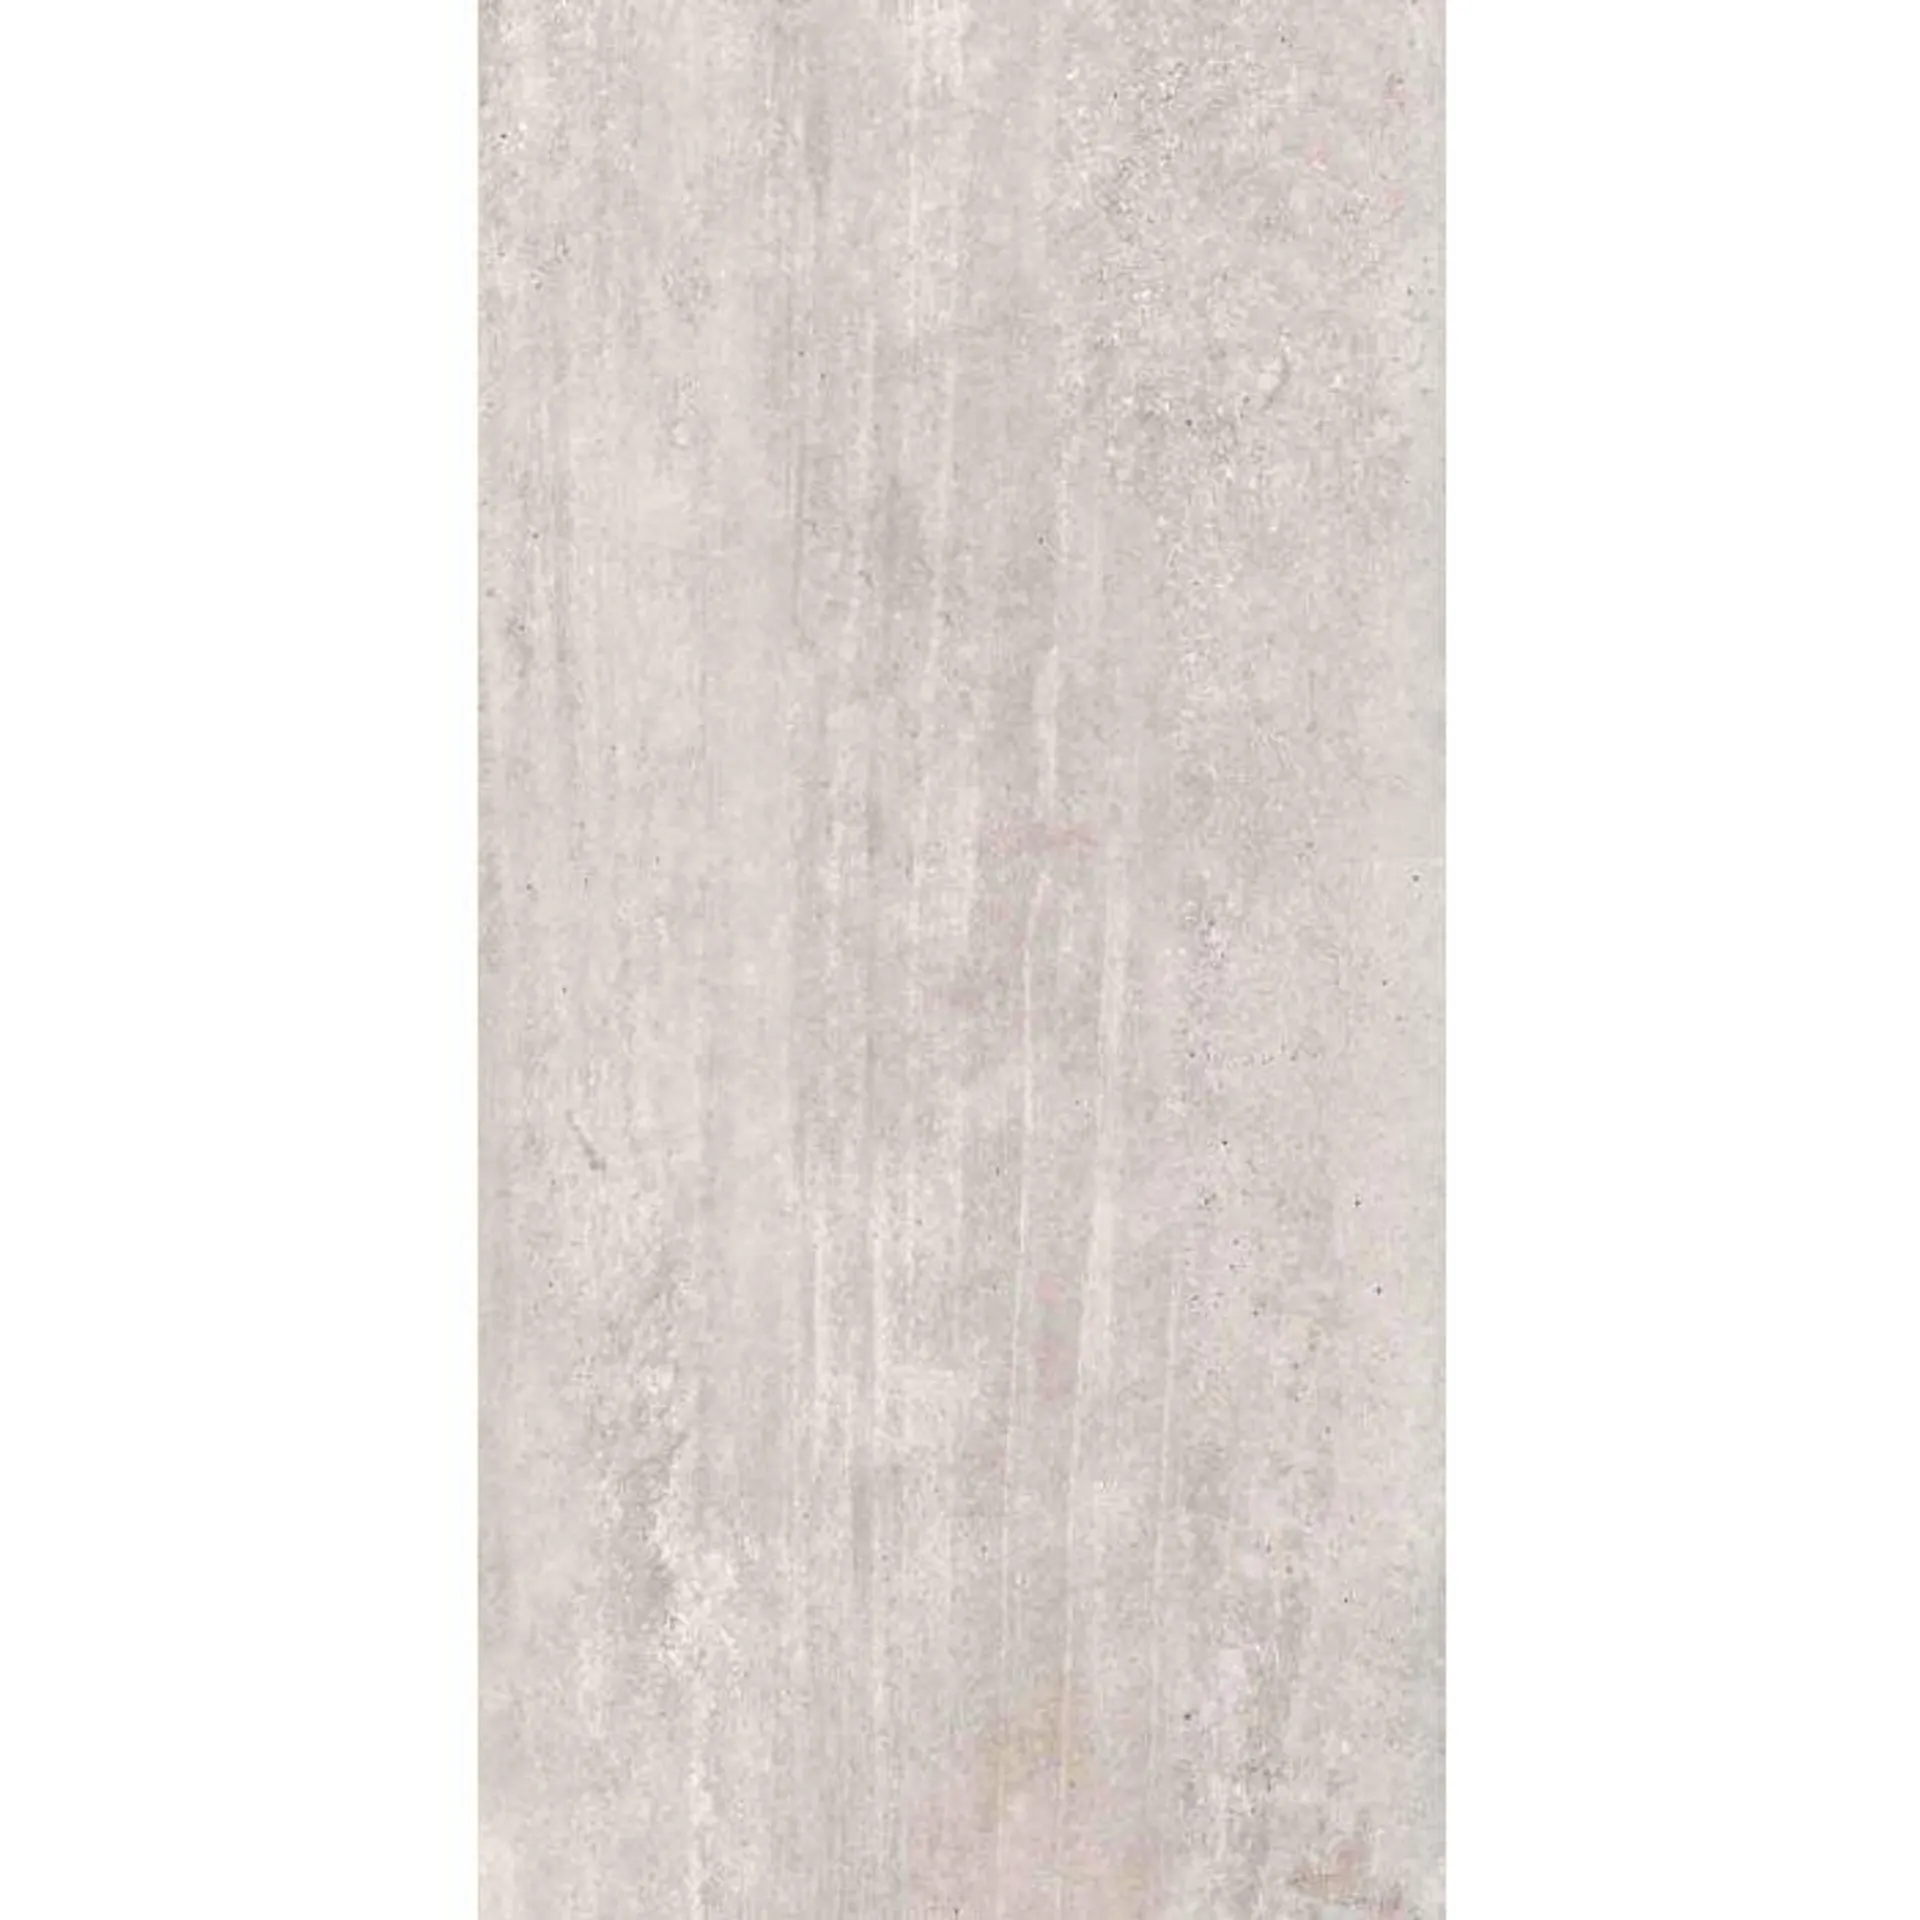 Authentik Westside Floor Tile, Silver 12" x 24"